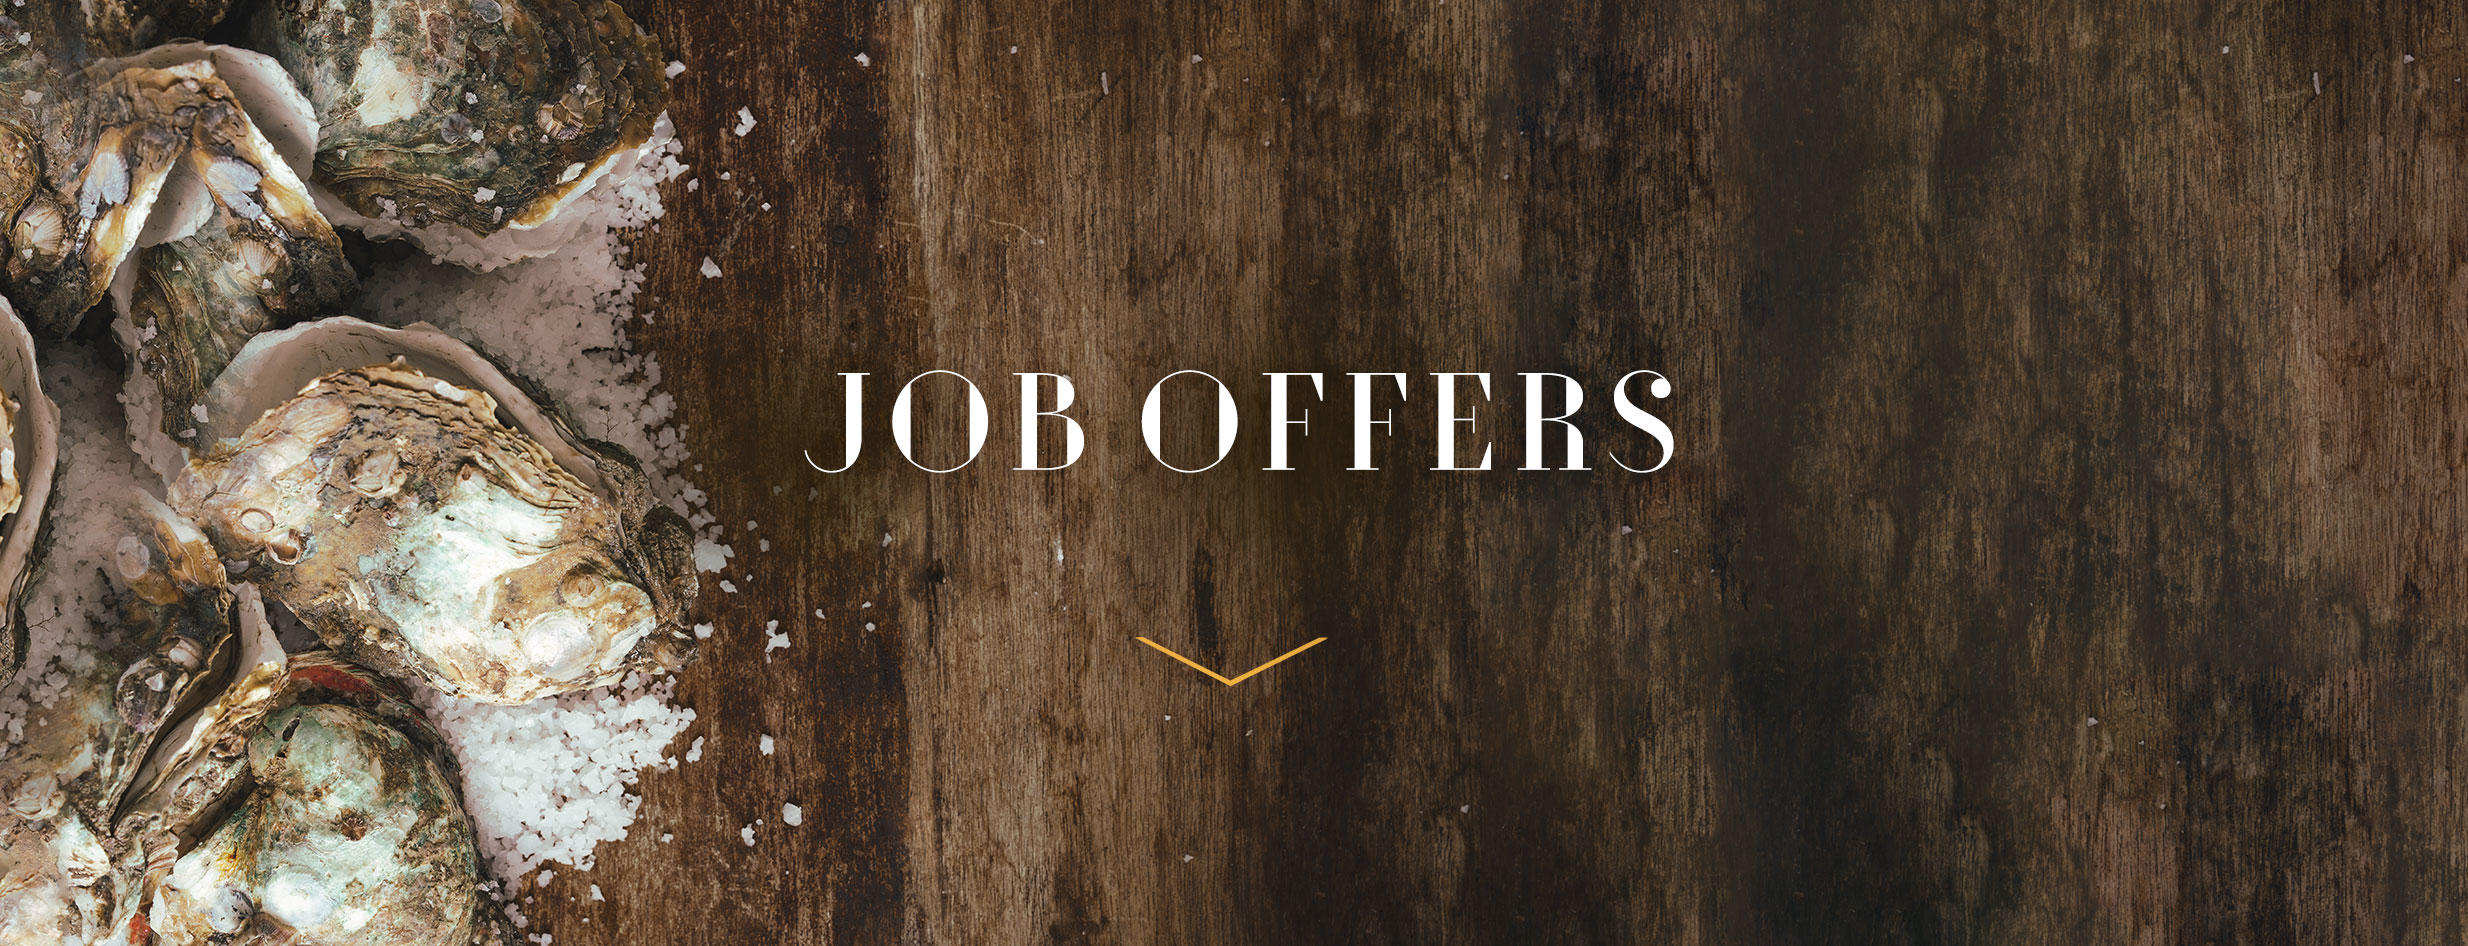 header_job_offer